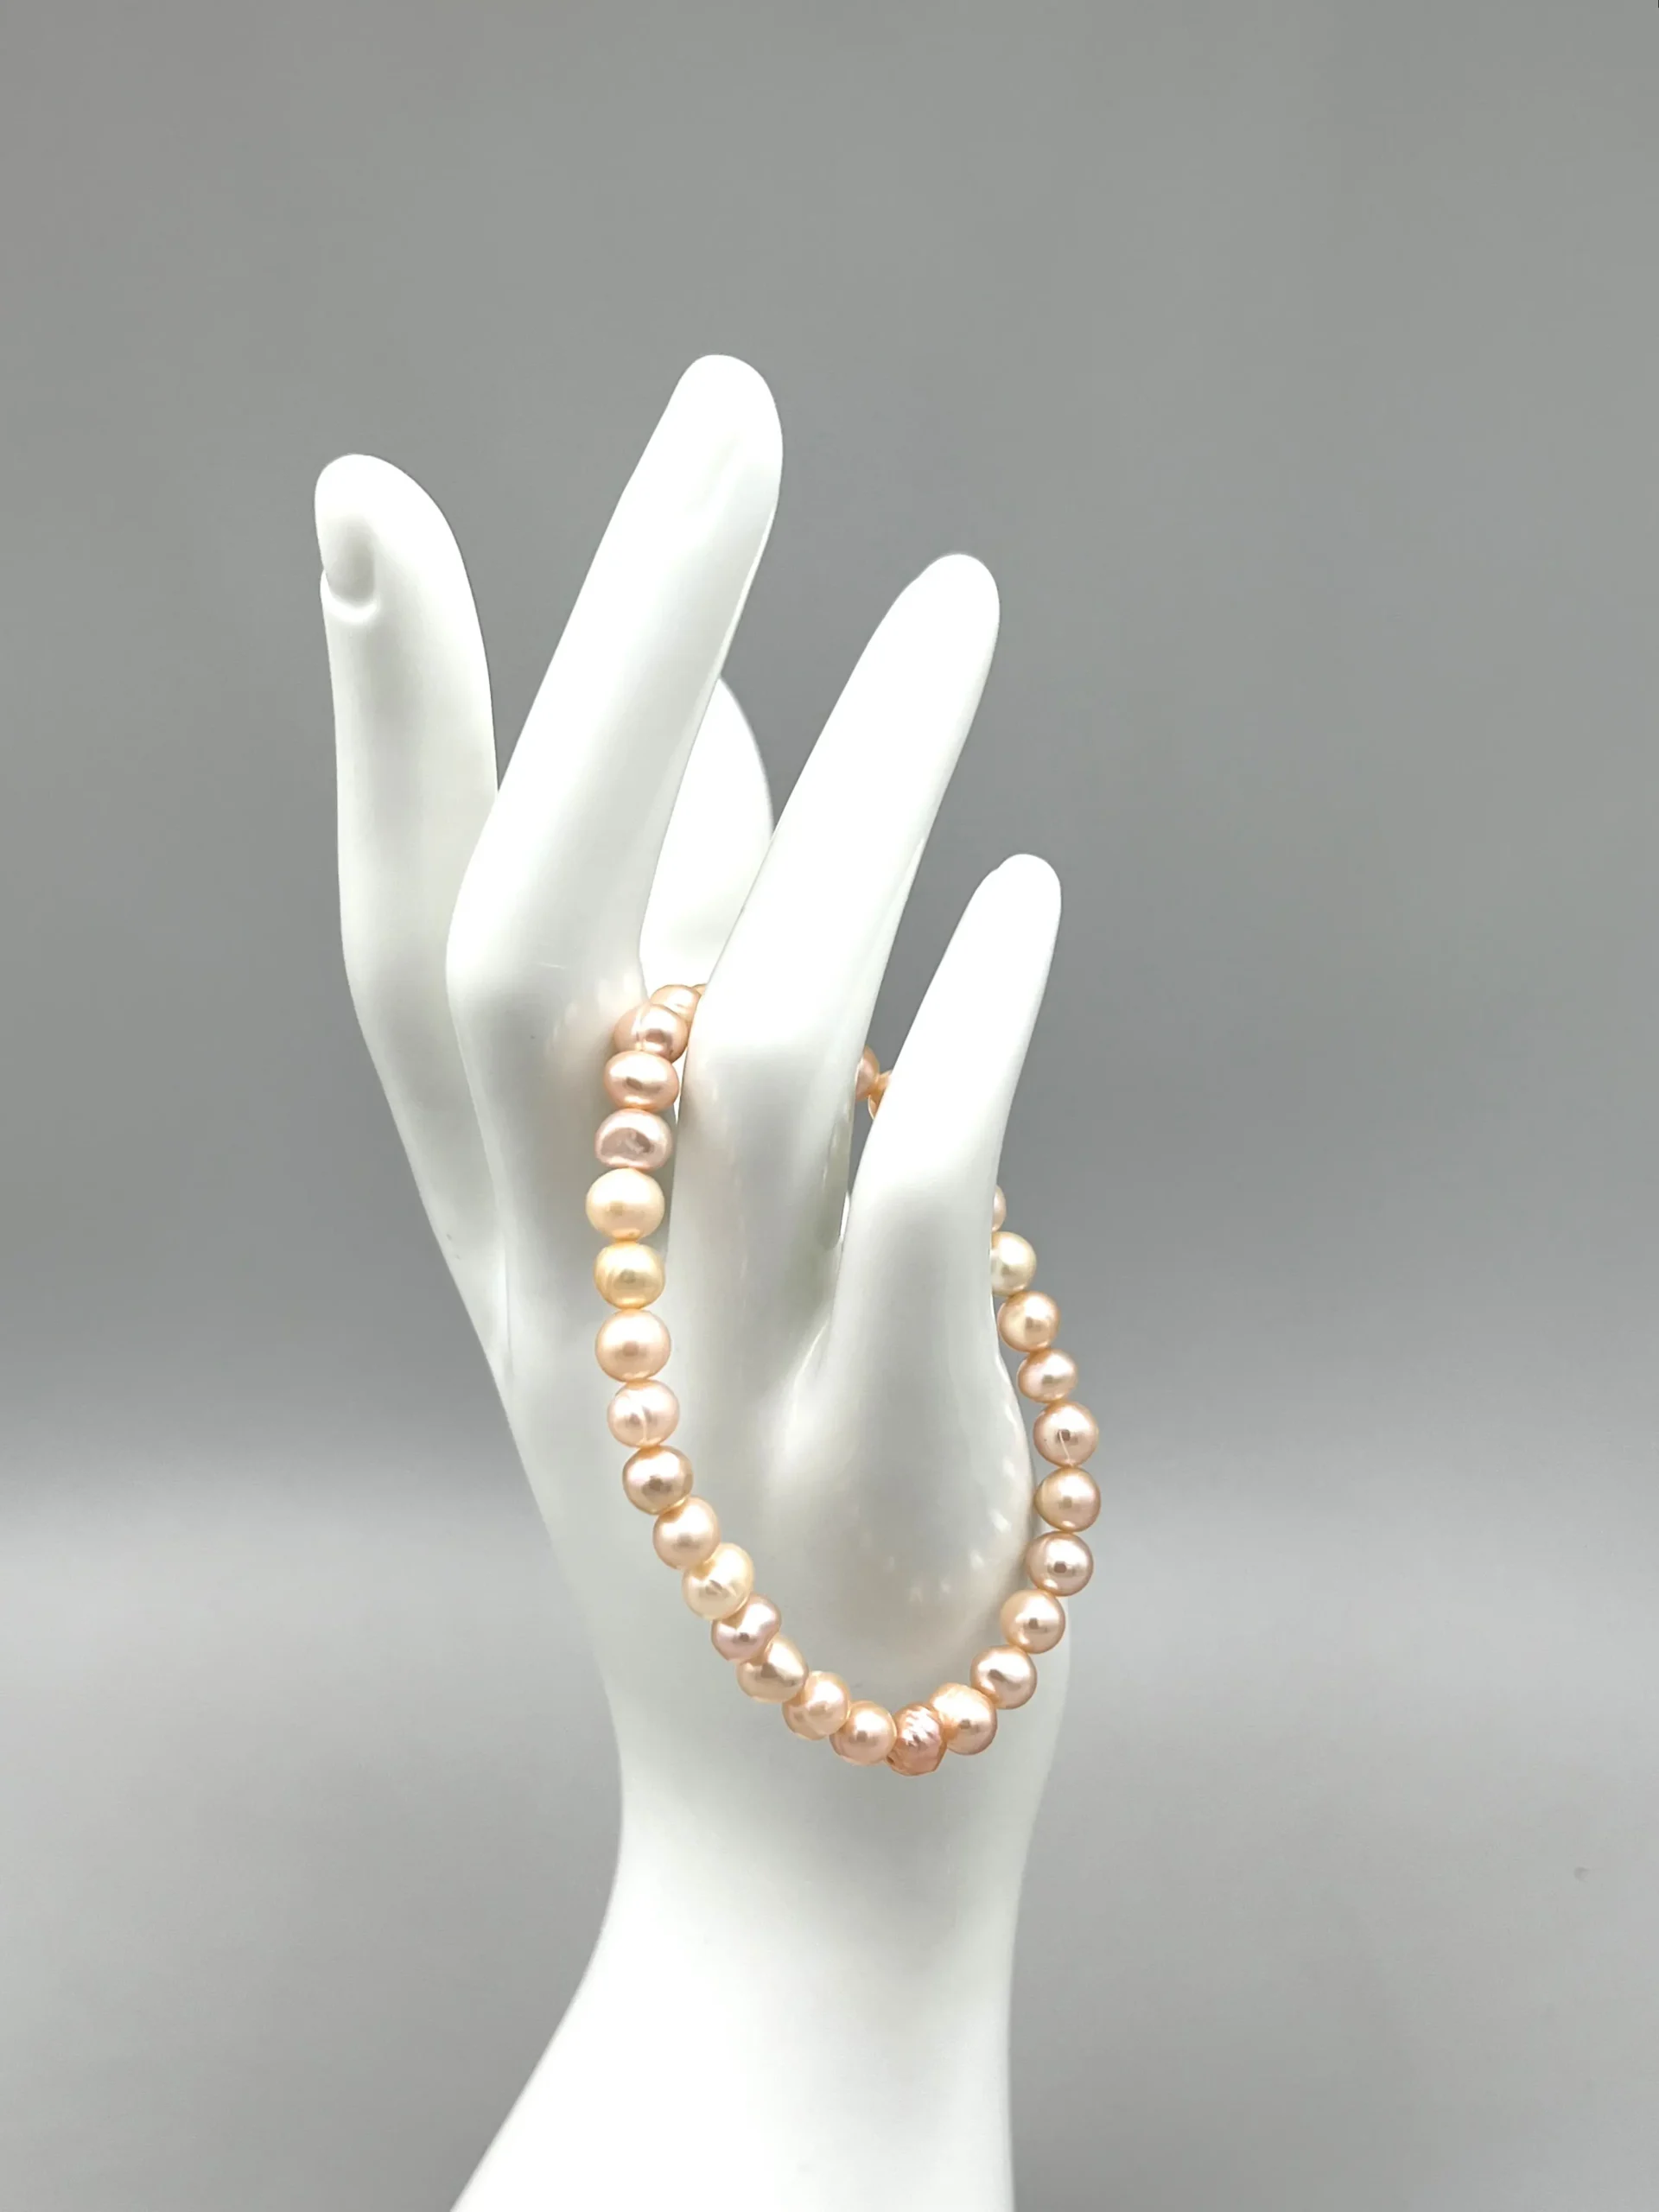 Pearl bracelet in light salmon color